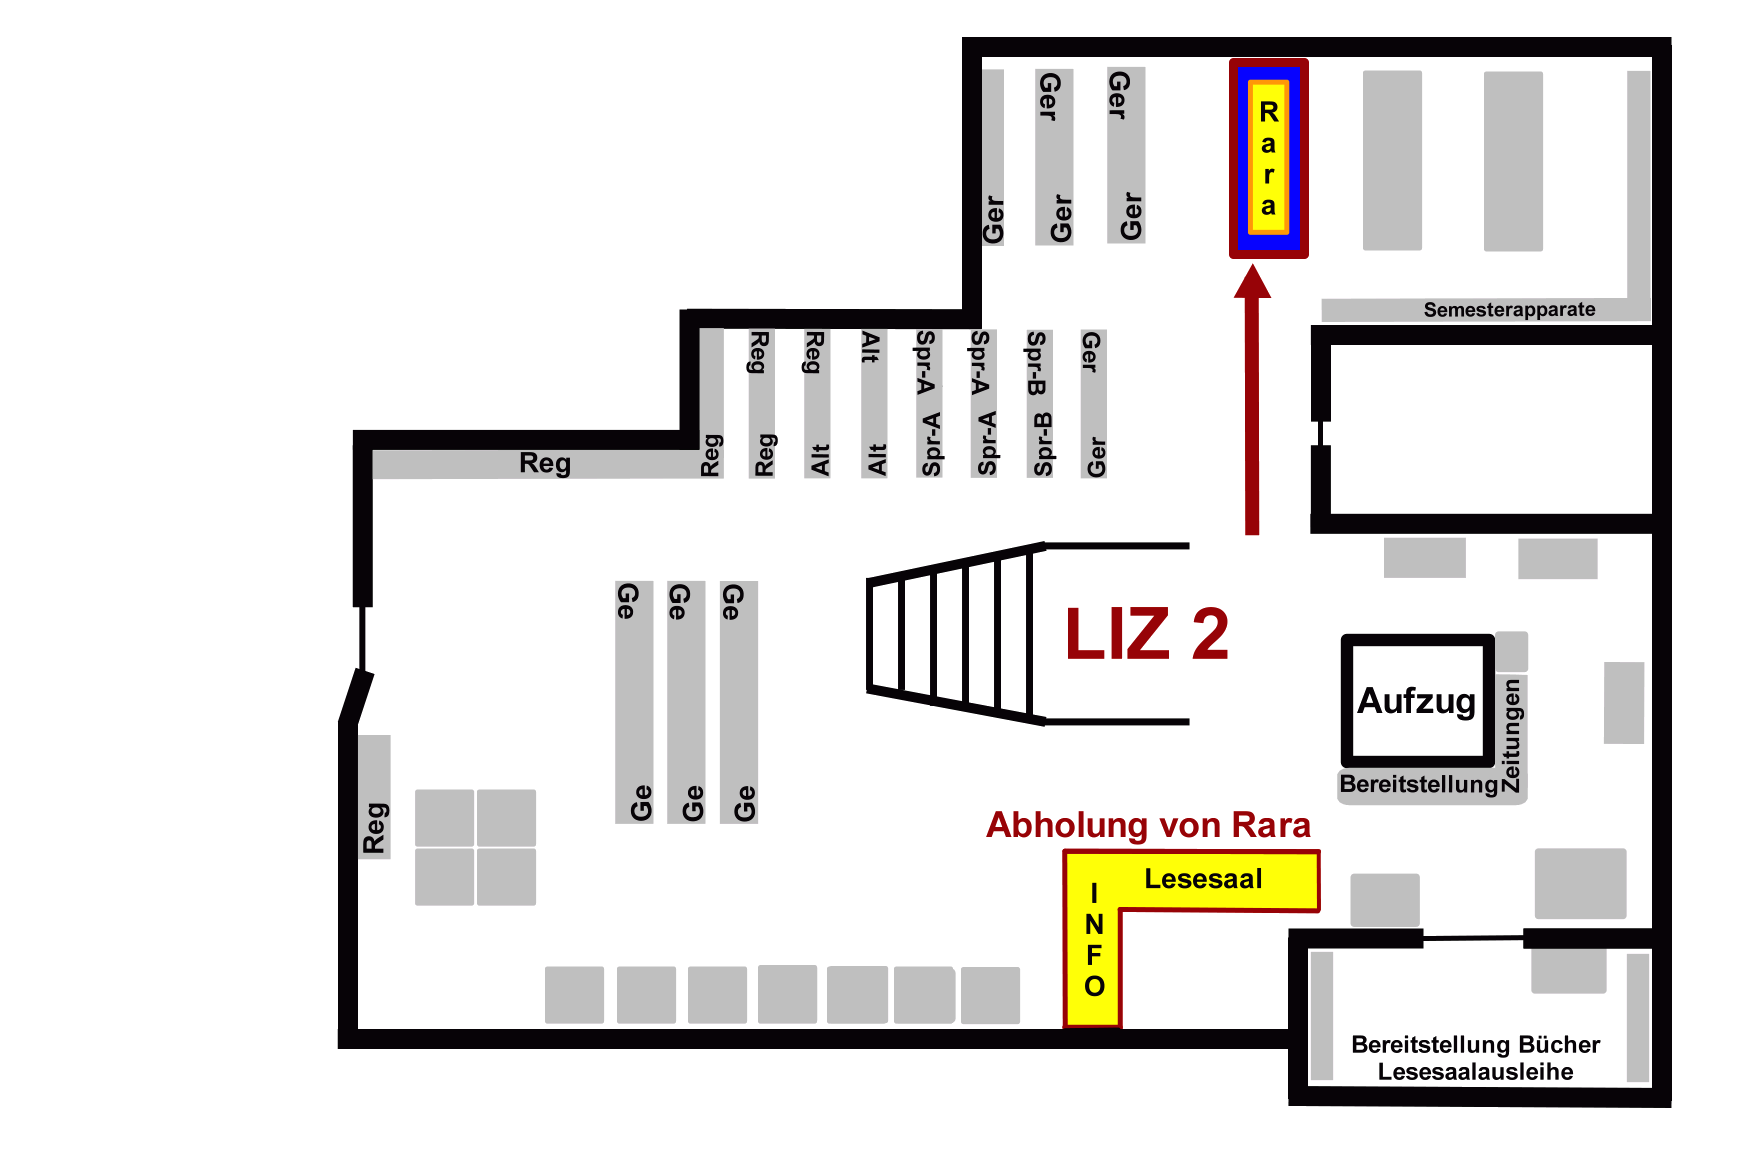 LIZ - Lern- und Informationszentrum Ebene 2, Rara-Arbeitsplatz